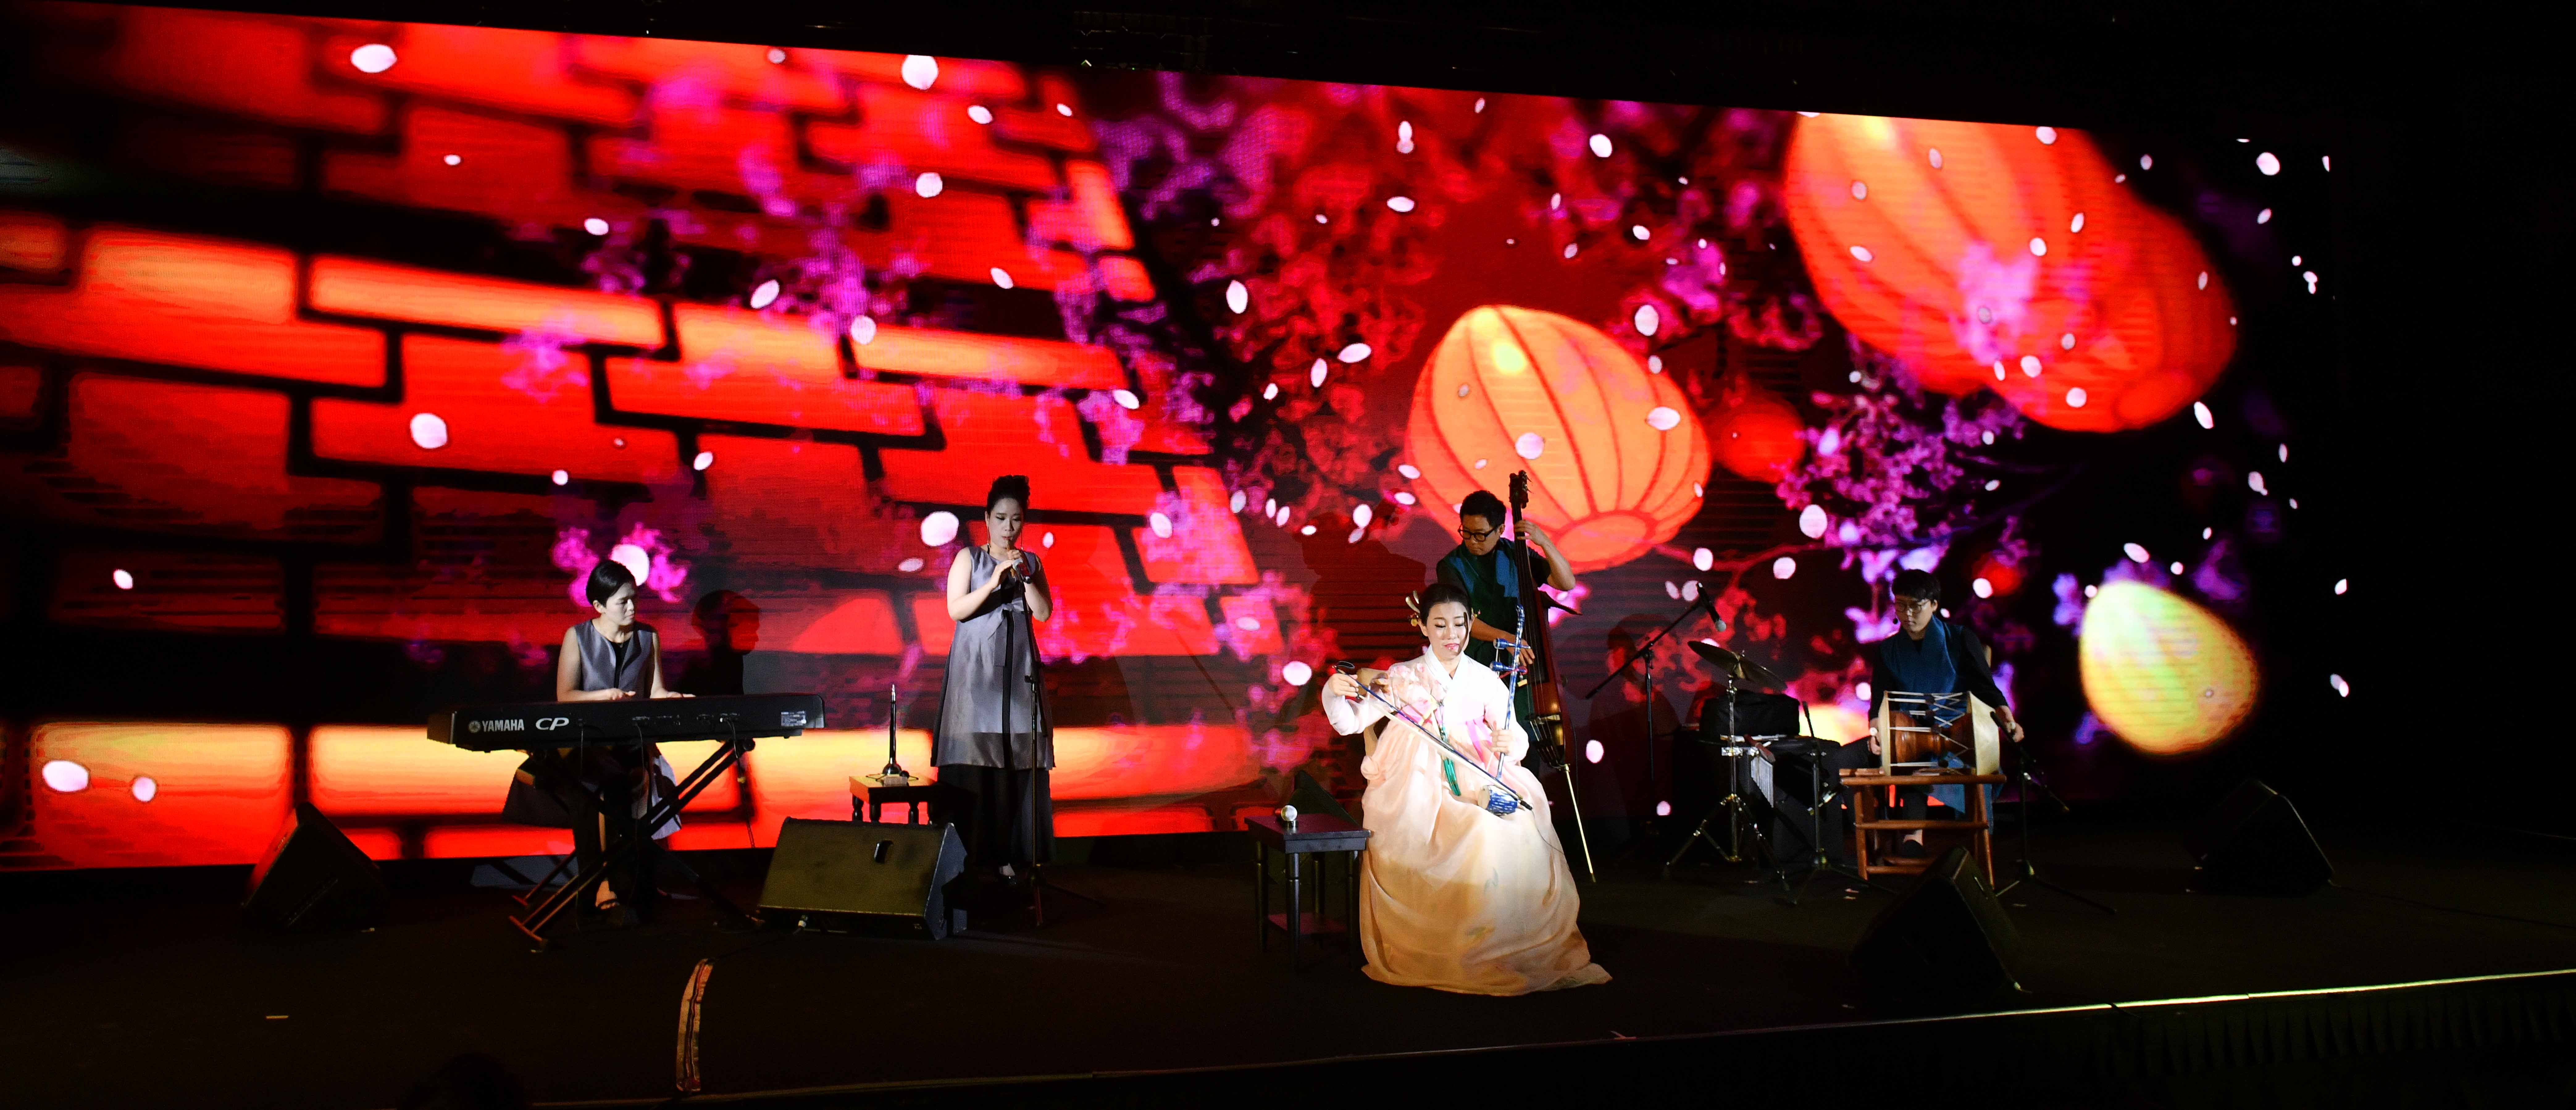 活動當晚，大會亦準備了韓國傳樂器表演，給合精心設計的光影畫面，令現場觀眾親身感受韓國宮廷的氣派與魅力。